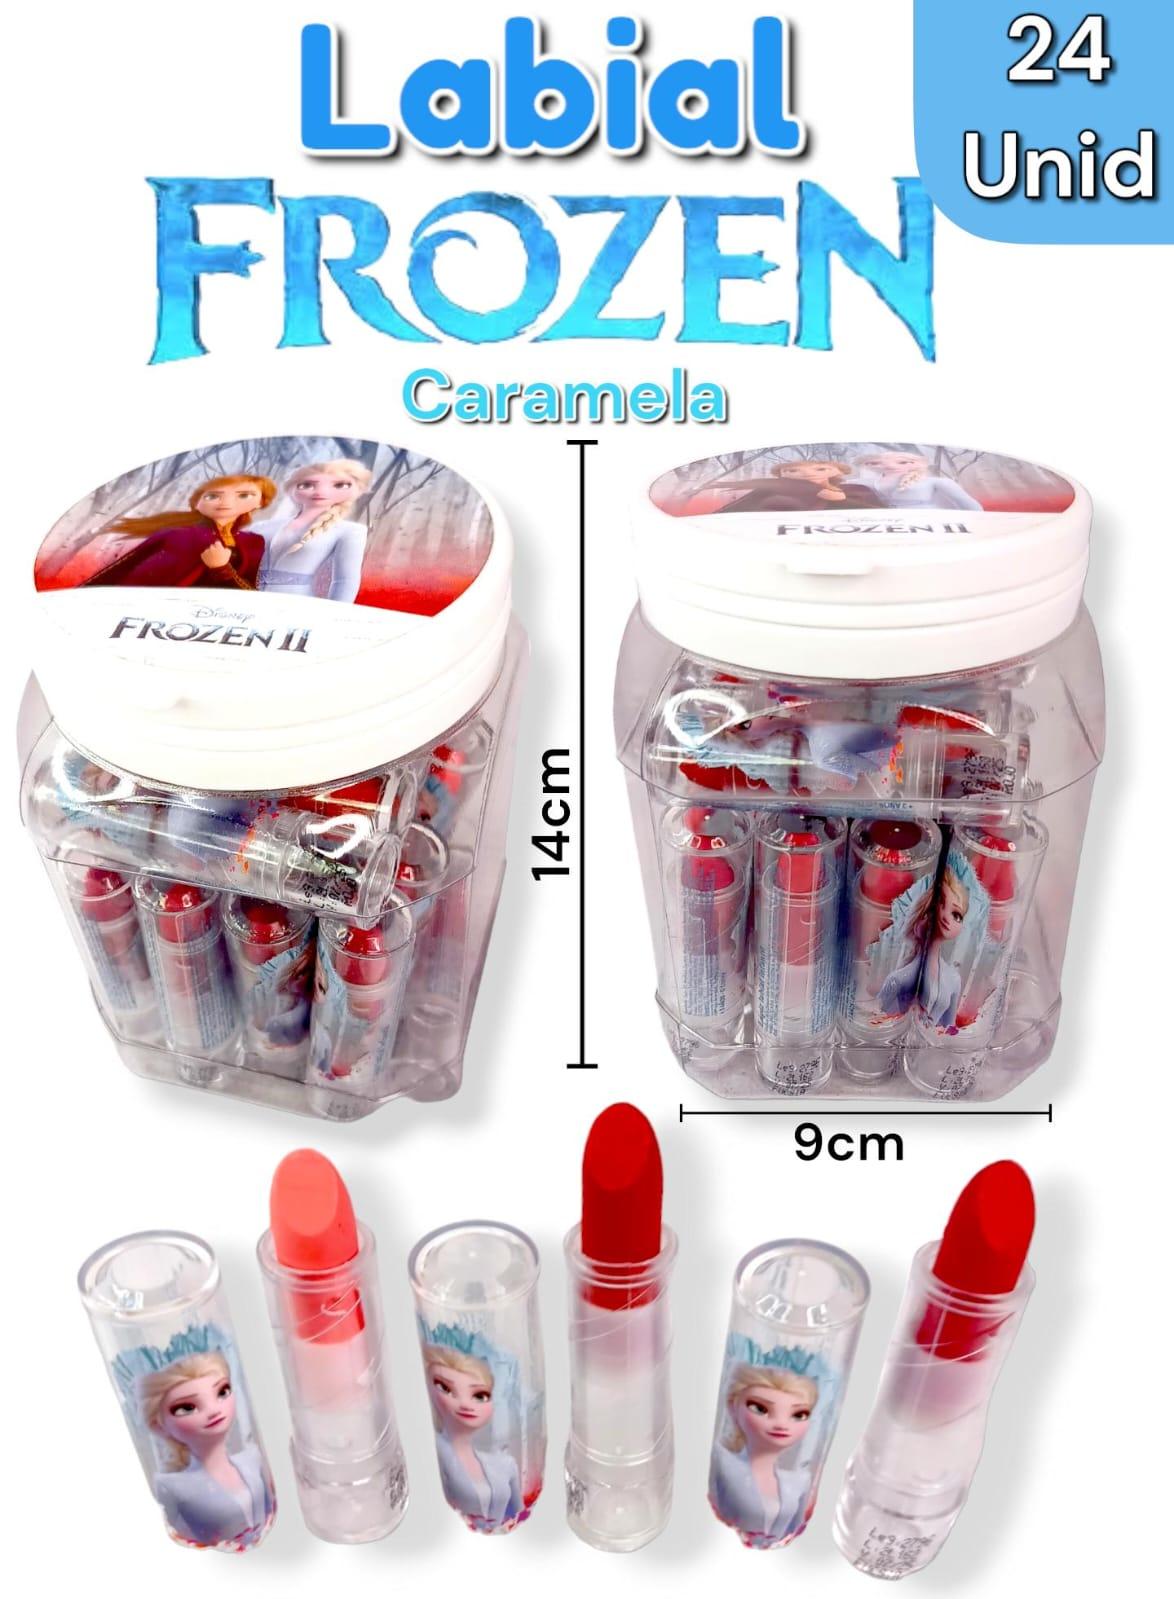 Labial Frozen en caramelera x 24 unidades